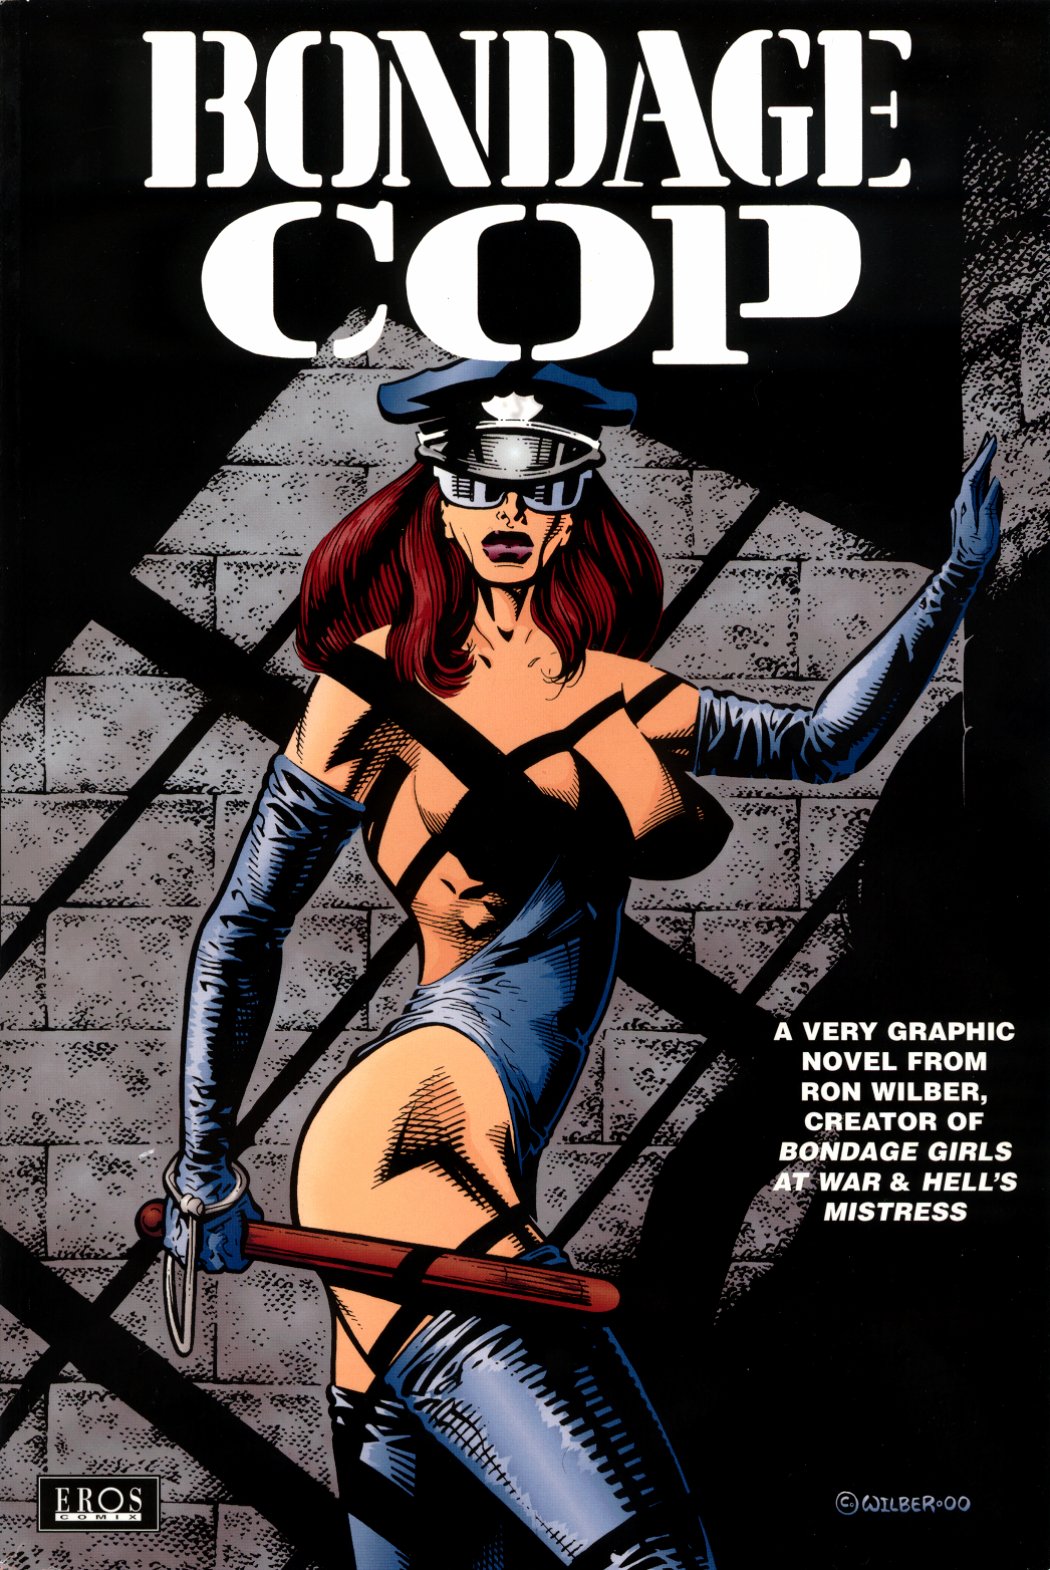 Adult bondage graphic novels